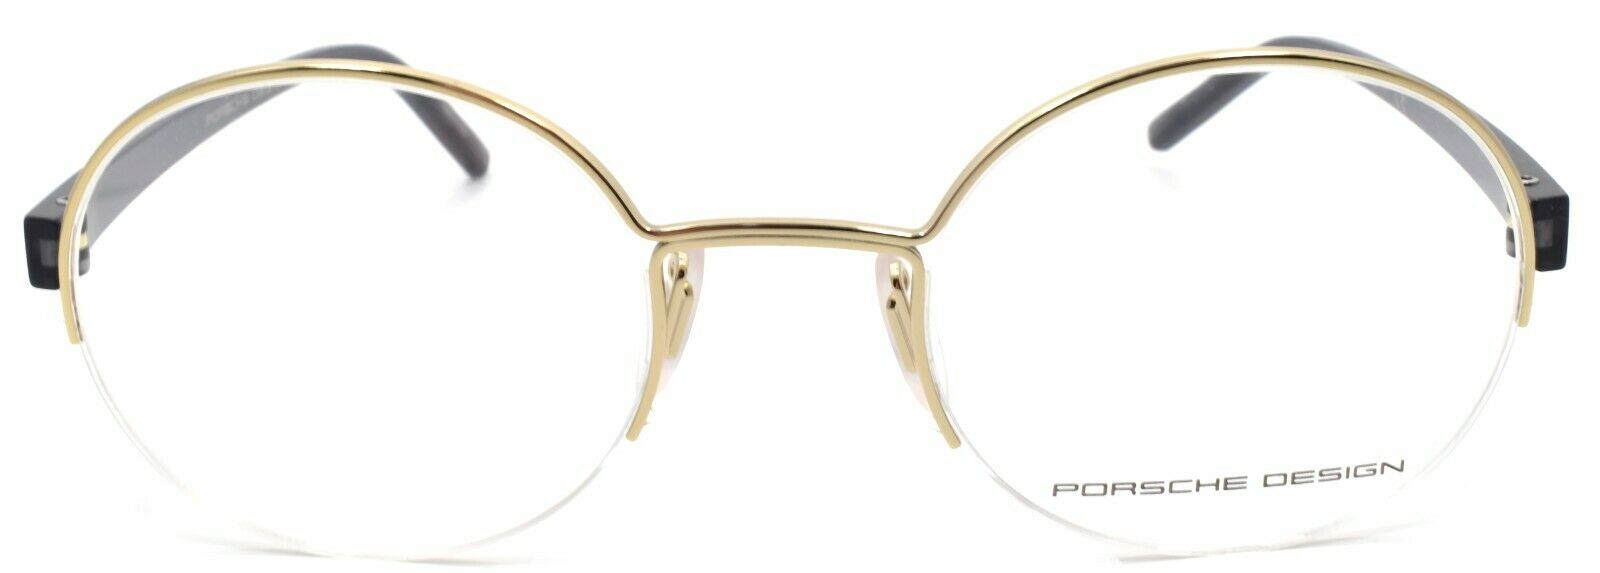 2-Porsche Design P8350 D Eyeglasses Frames Half-rim Round 50-22-145 Gold-4046901618254-IKSpecs